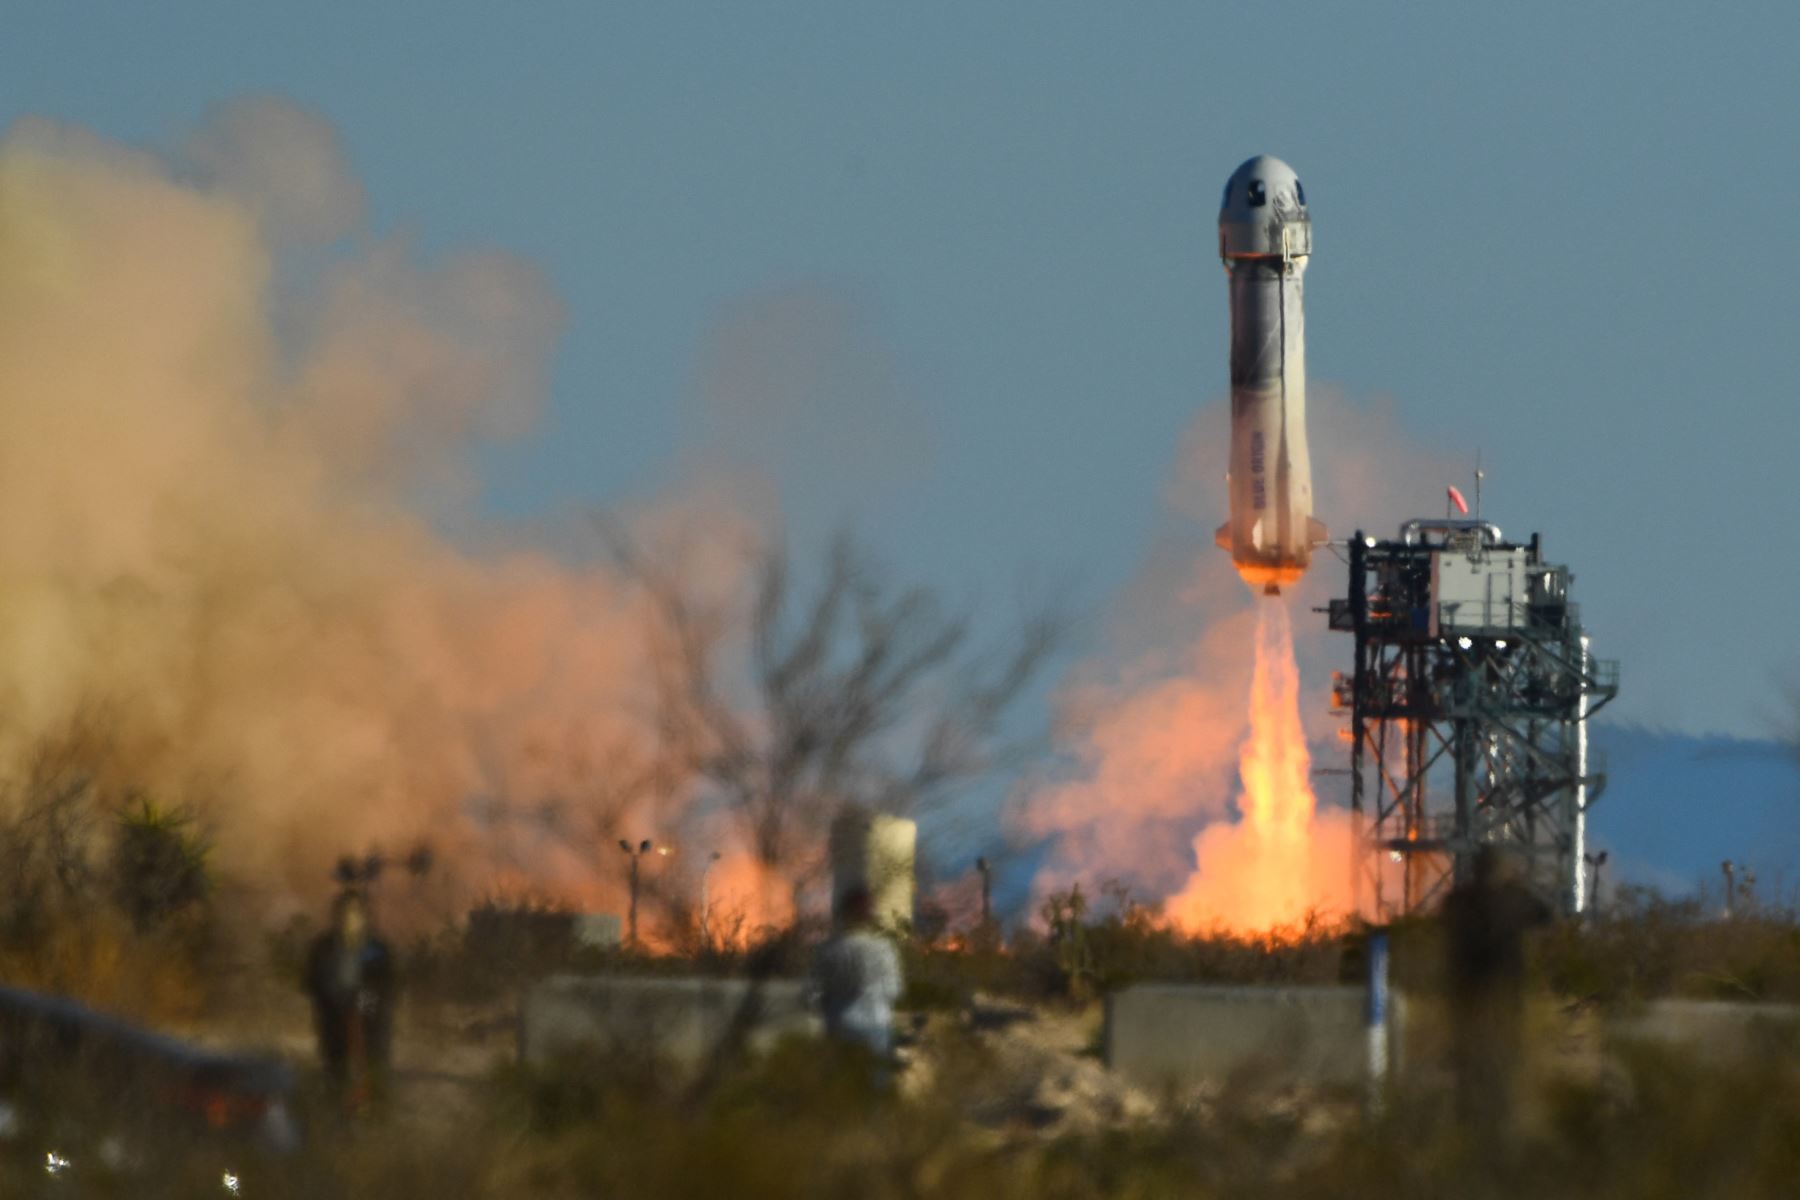 Lanzamiento del cohete New Shepard de Blue Origin se lanza en Texas. La misión NS-20 lleva al arquitecto jefe de New Shepard de Blue Origin Gary Lai, Marty Allen, Sharon Hagle, Marc Hagle, Jim Kitchen y el Dr. George Nield al espacio. Foto: AFP